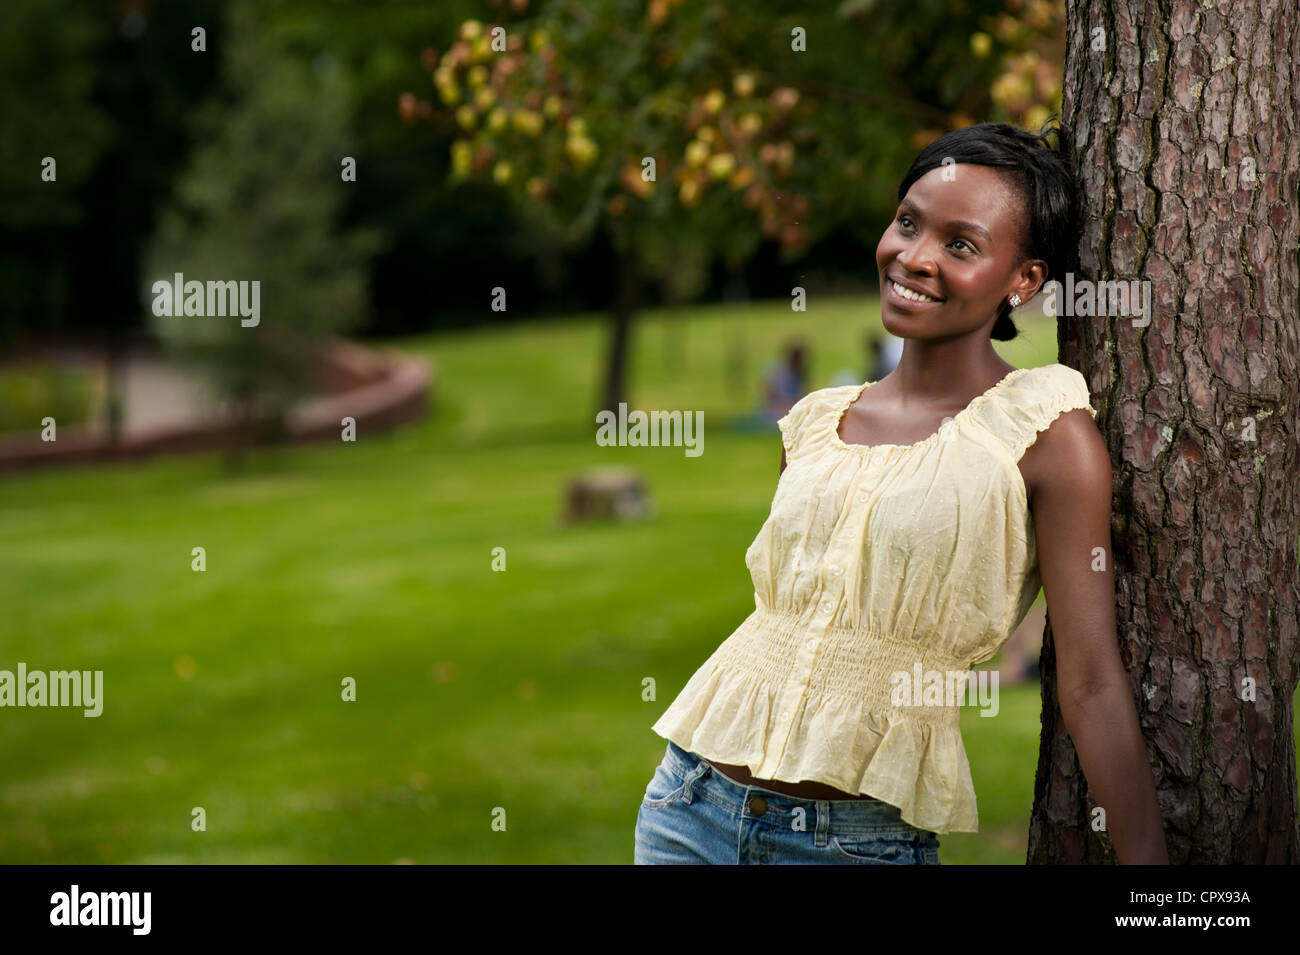 Junge afrikanische Frau gegen einen Baum in einem Park, Lächeln Stockfoto